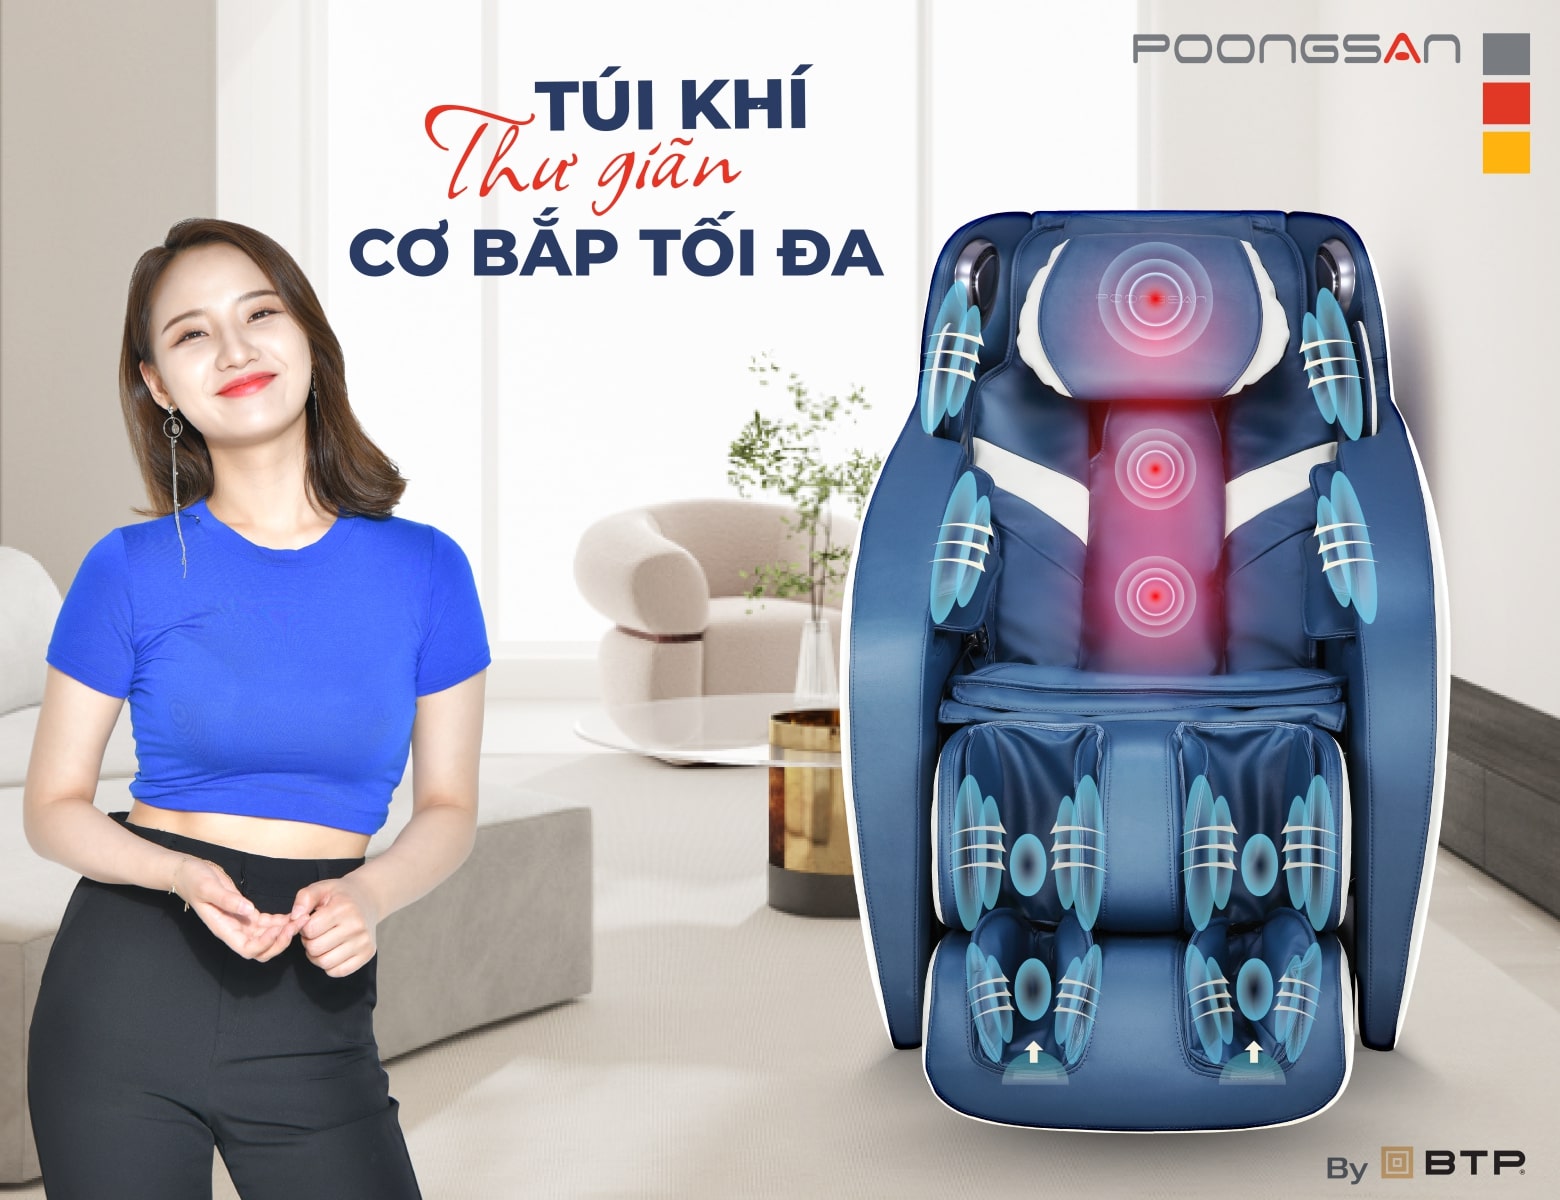 Túi khí massage chuyên sâu êm ái giúp thư giãn cơ bắp tối đa